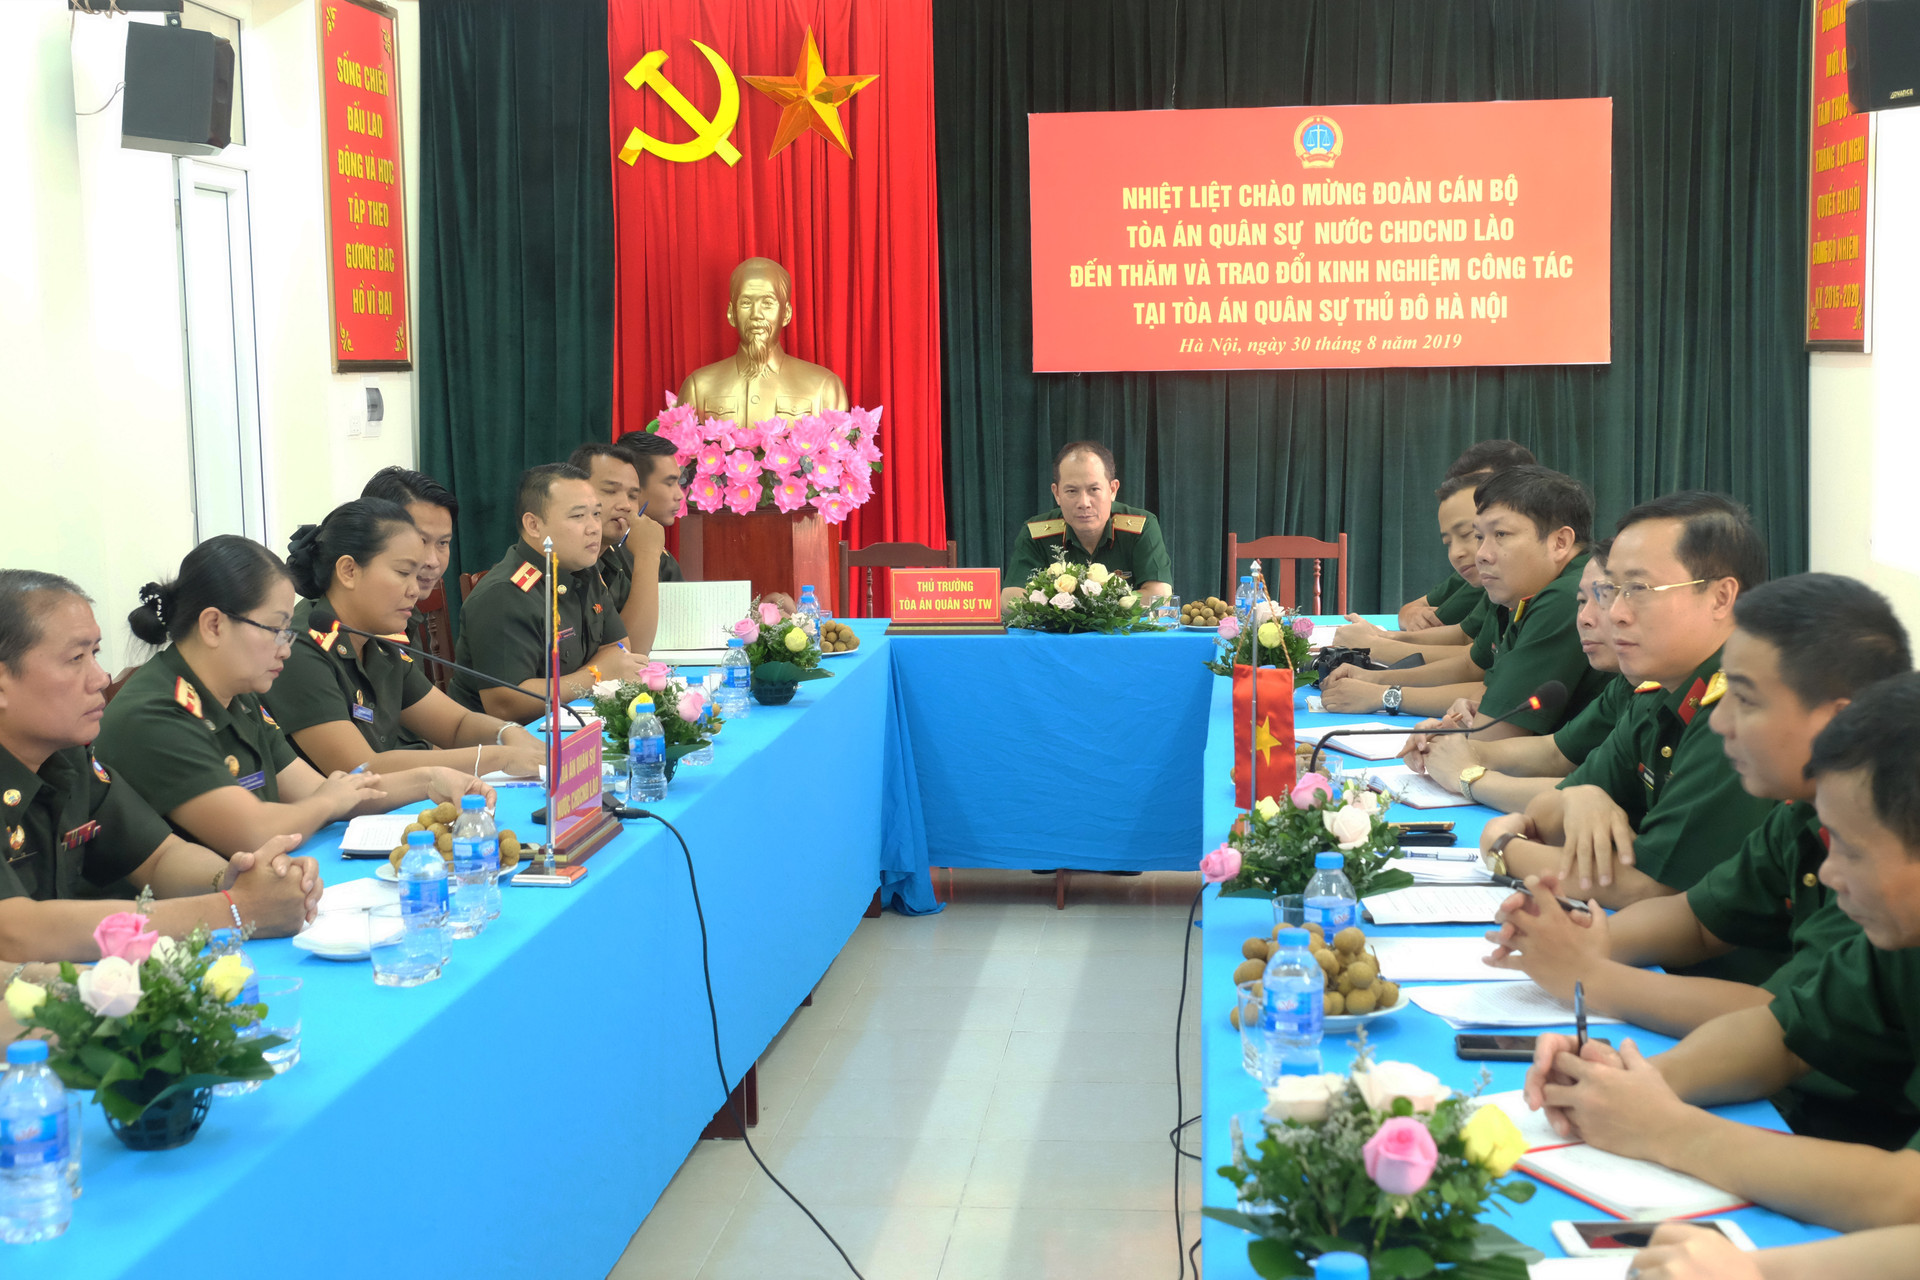 Tòa án quân sự hai nước Việt Nam - Lào trao đổi nghiệp vụ, kinh nghiệm xét xử